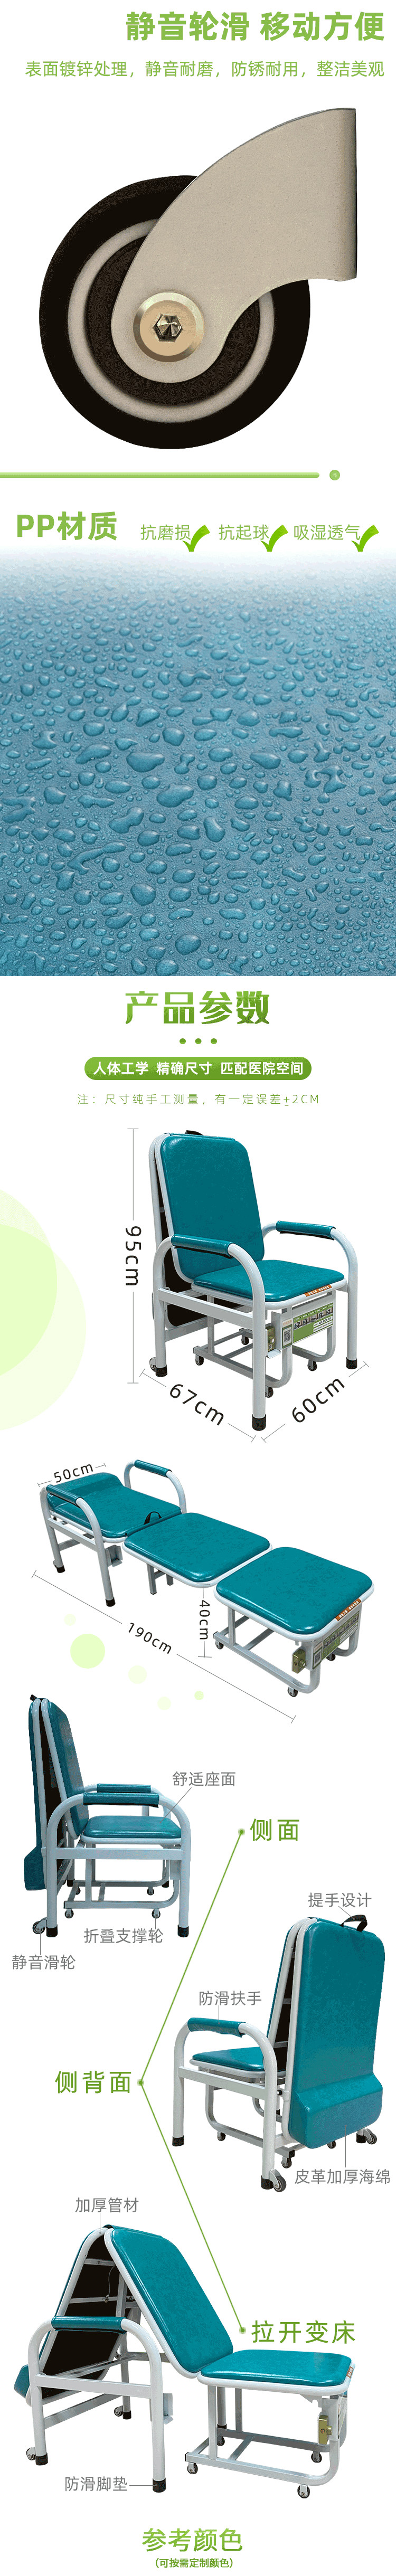 共享陪护椅3.jpg